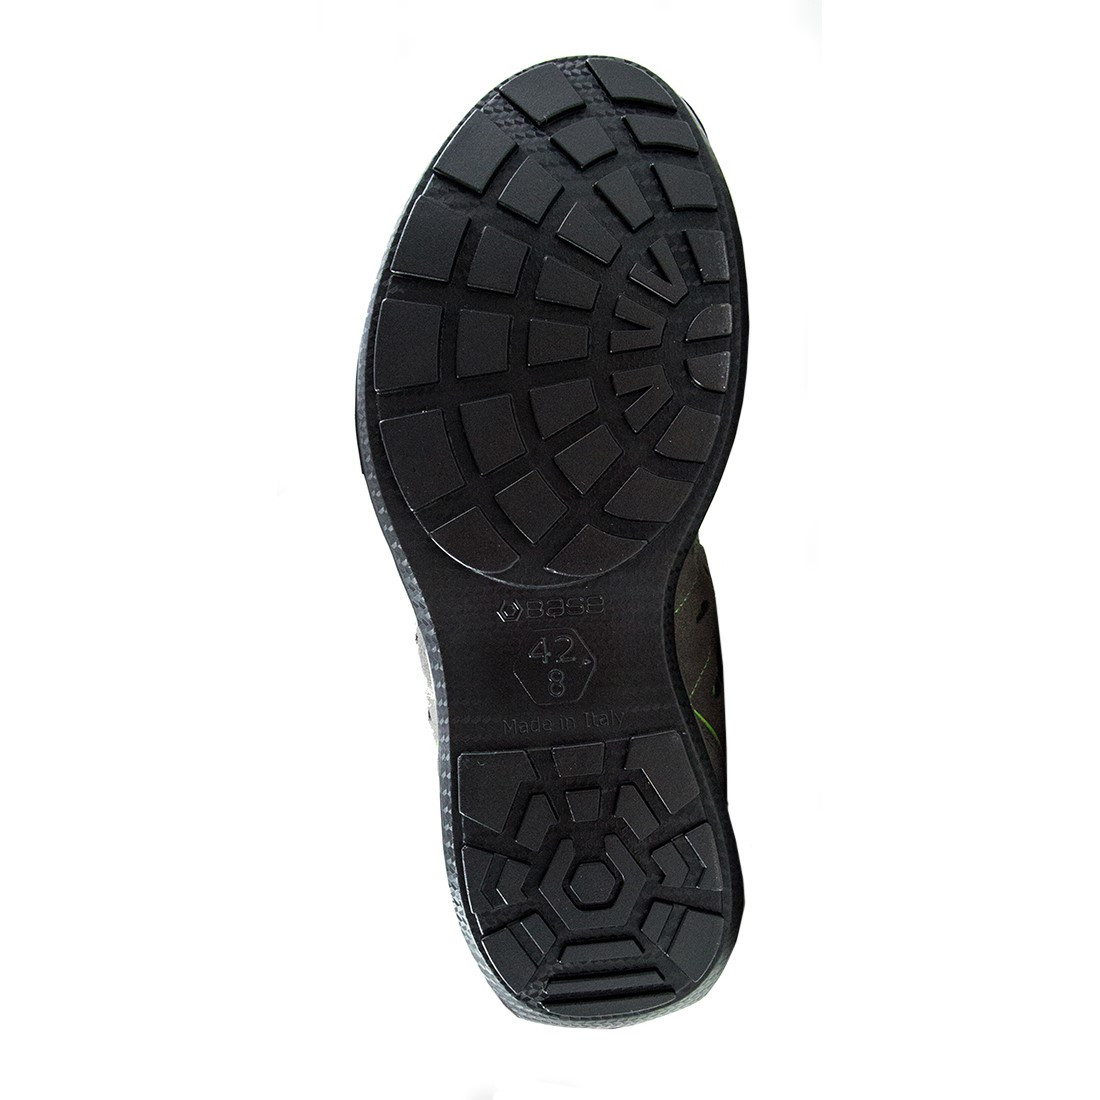 Pantofi Climb S1P SRC - Incaltaminte de protectie | Bocanci, Pantofi, Sandale, Cizme